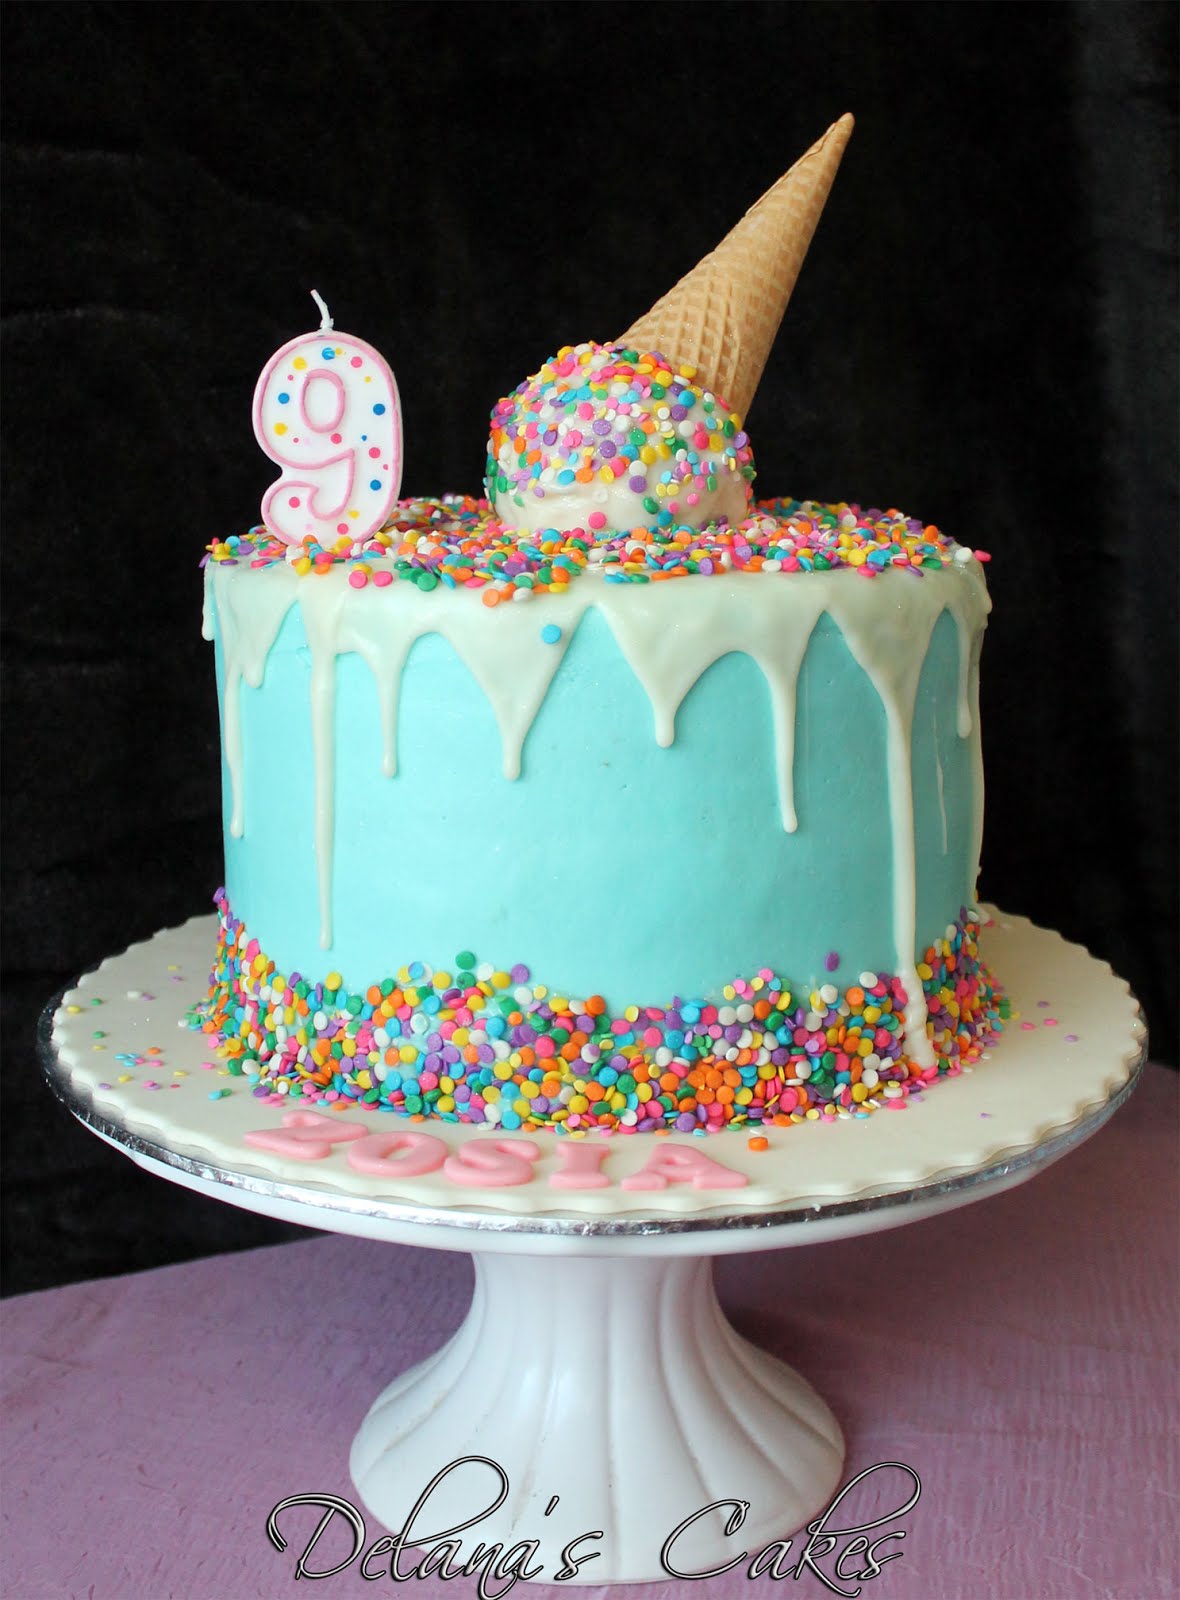 Delana's Cakes Melting Ice cream cake!